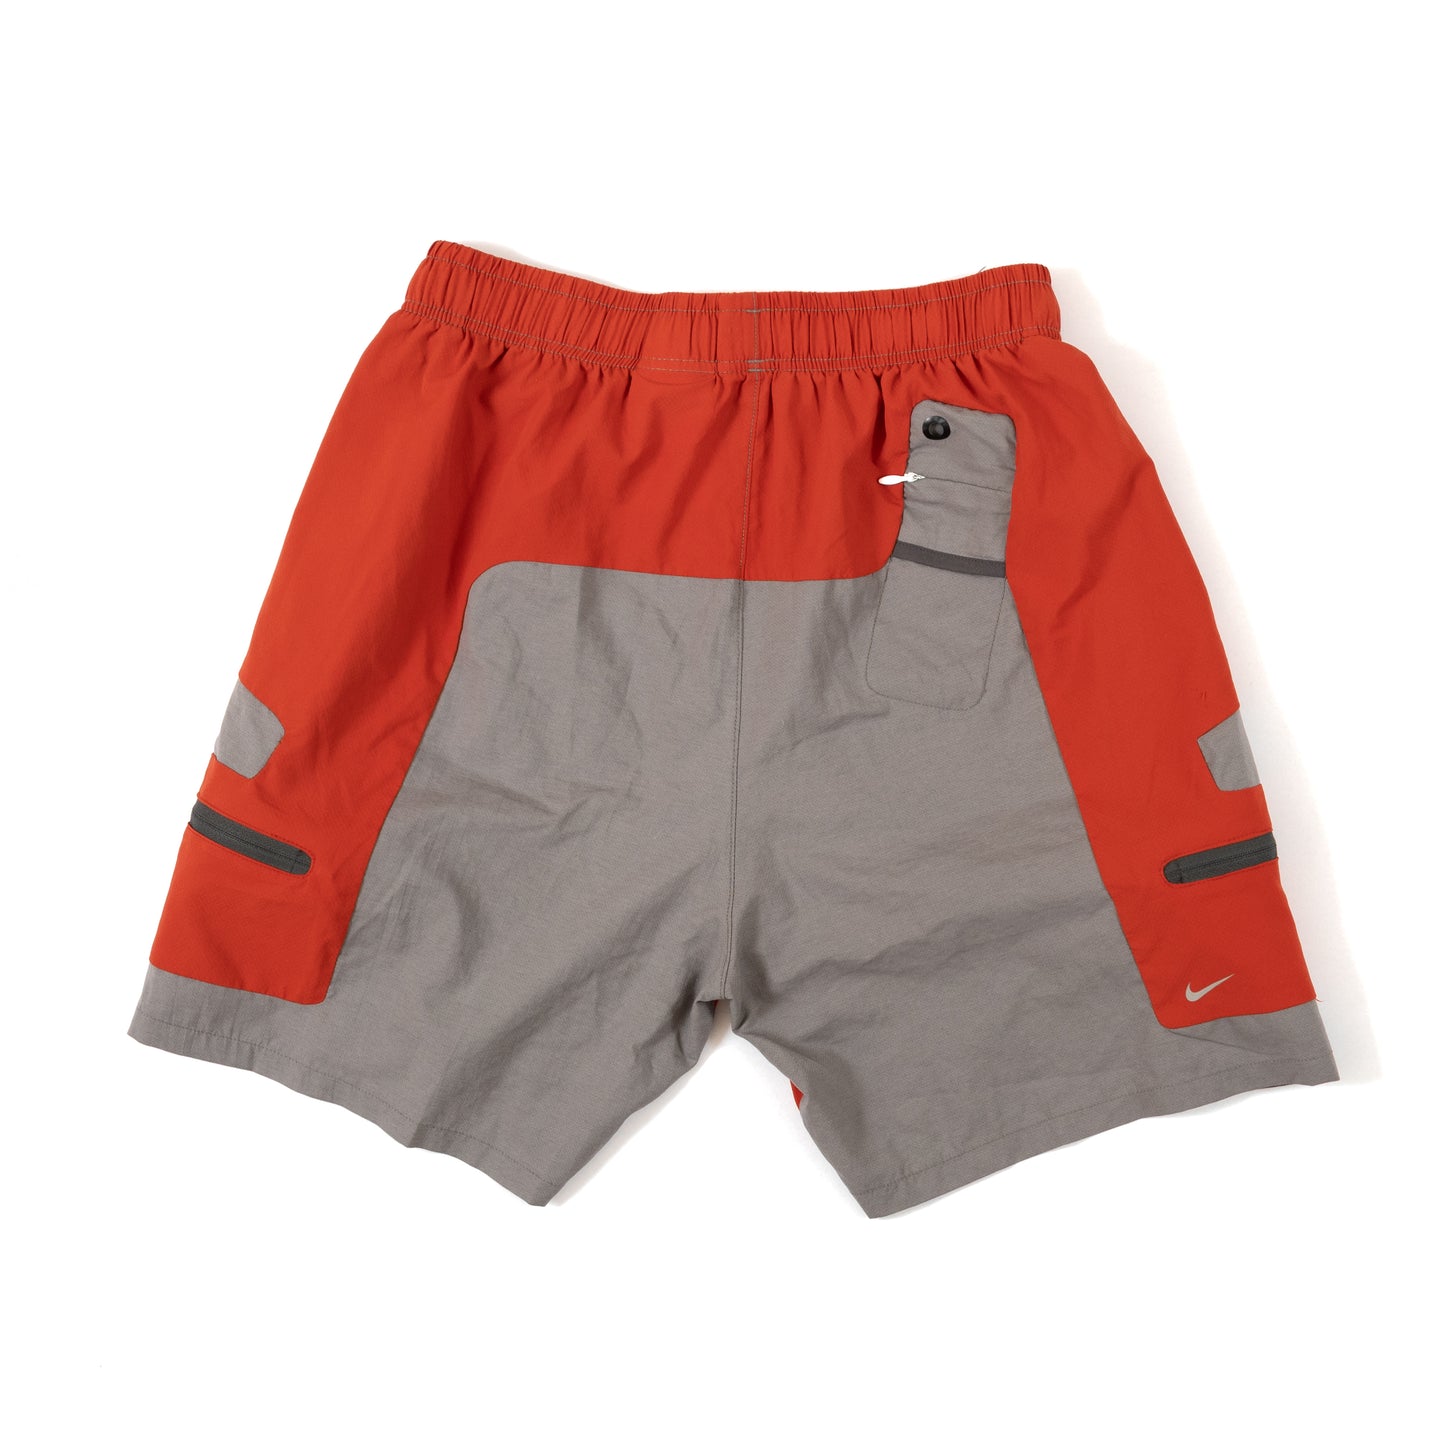 Undercover x Nike Gyakusou Orange/Grey Shorts